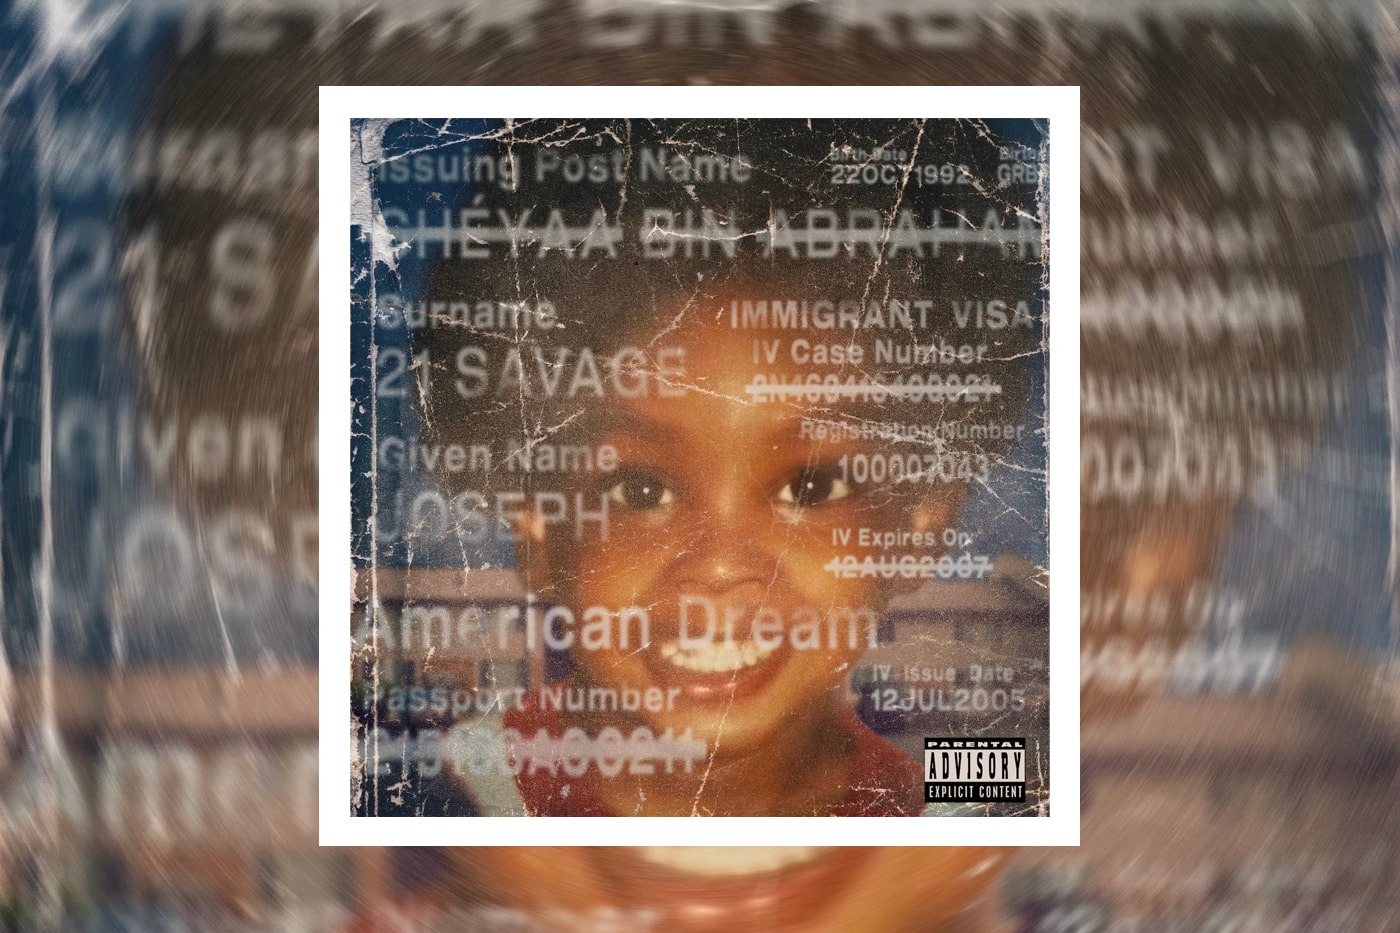 21 Savage American Dream Album Stream